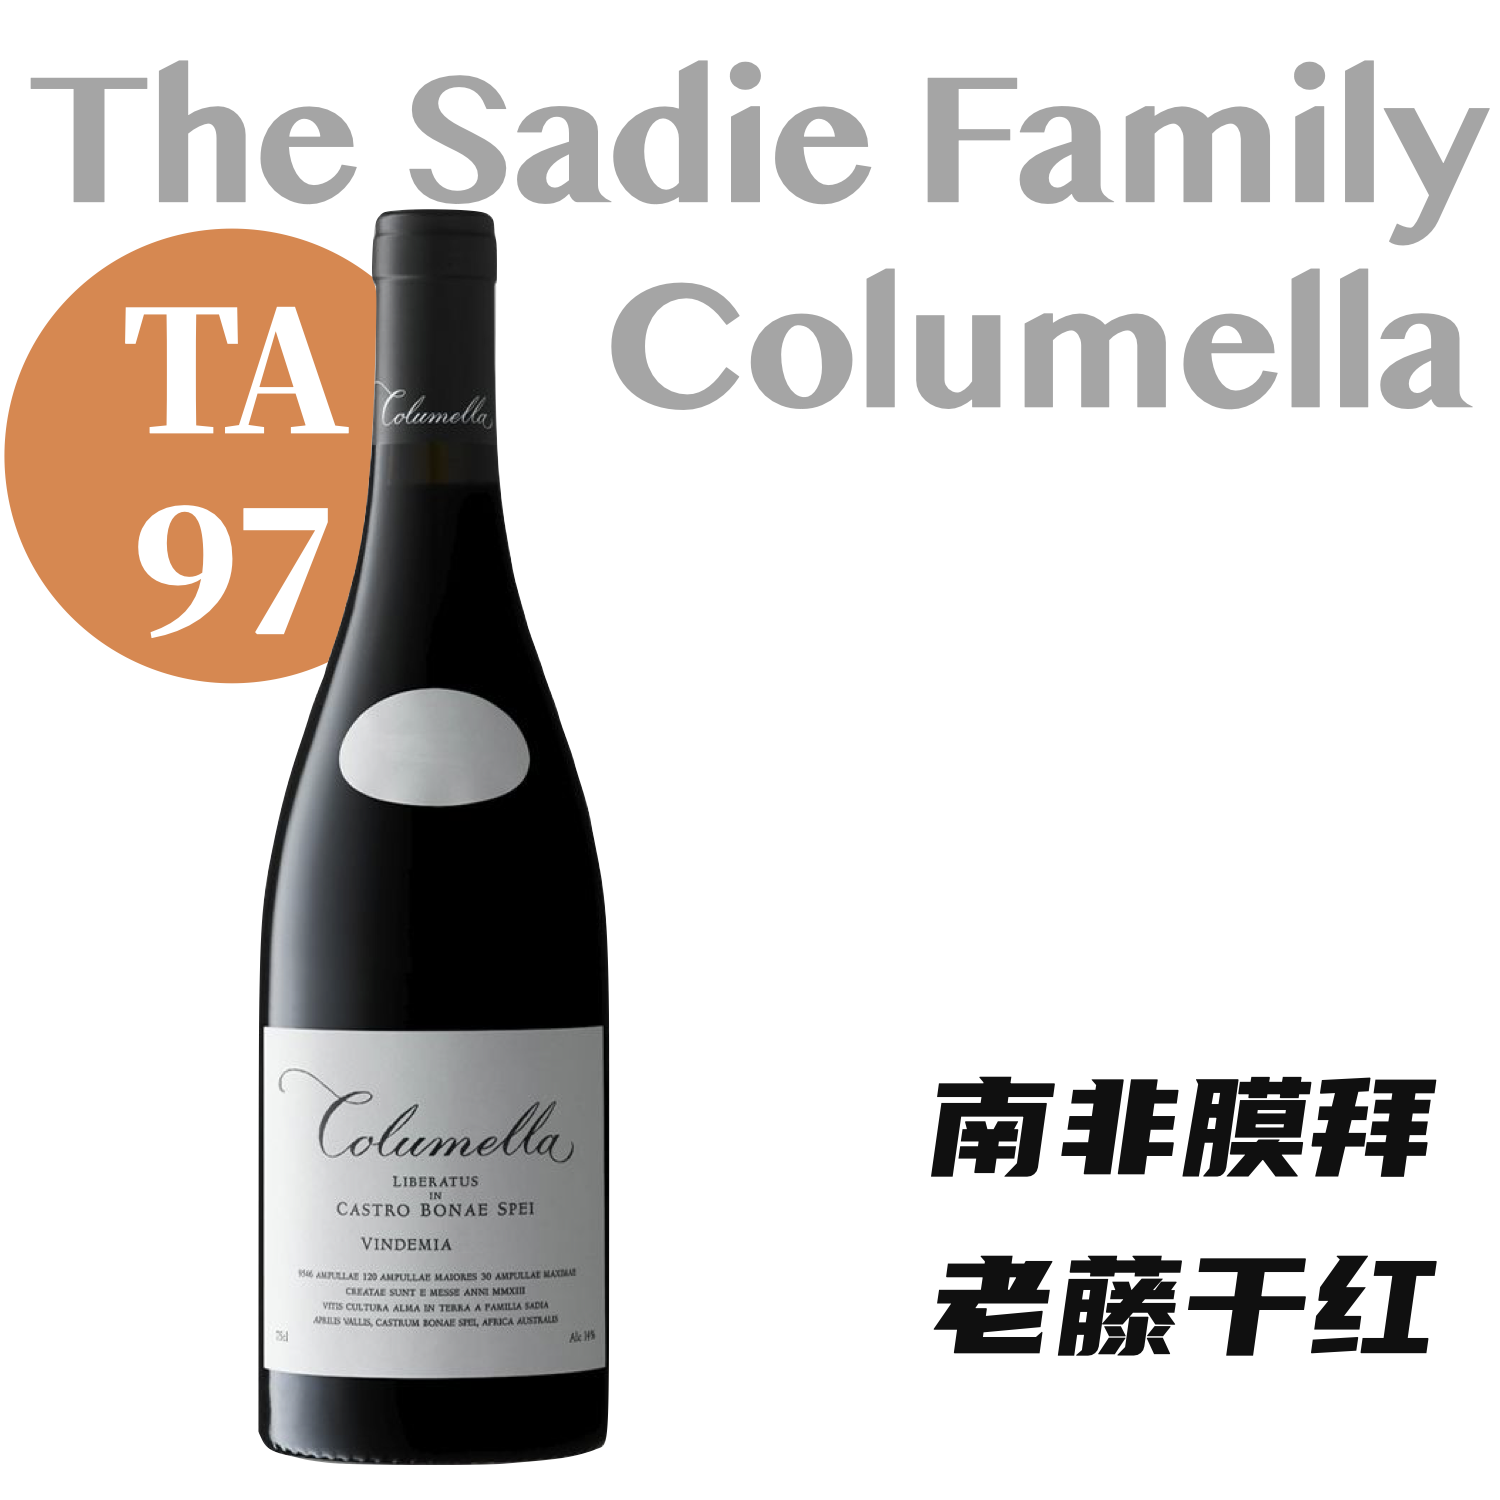 【仅4支·TA97复杂强劲南非膜拜干红】2016 赛蒂家族科卢梅梅拉红葡萄酒 The Sadie Family "Columella" Red